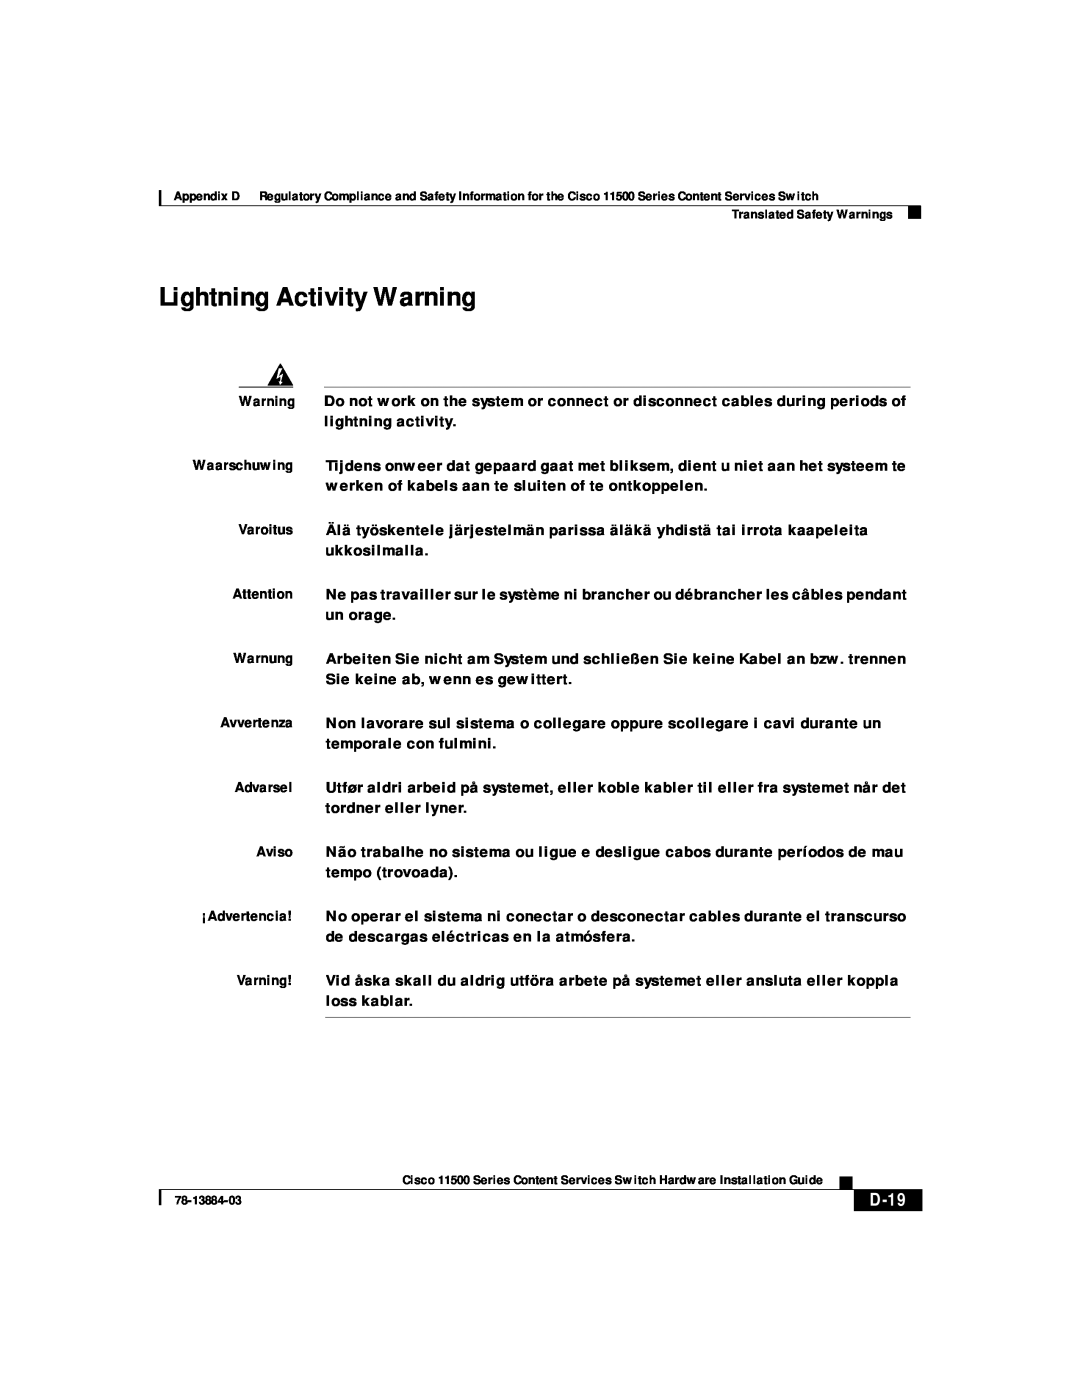 Cisco Systems 11500 Series manual Lightning Activity Warning, D-19 